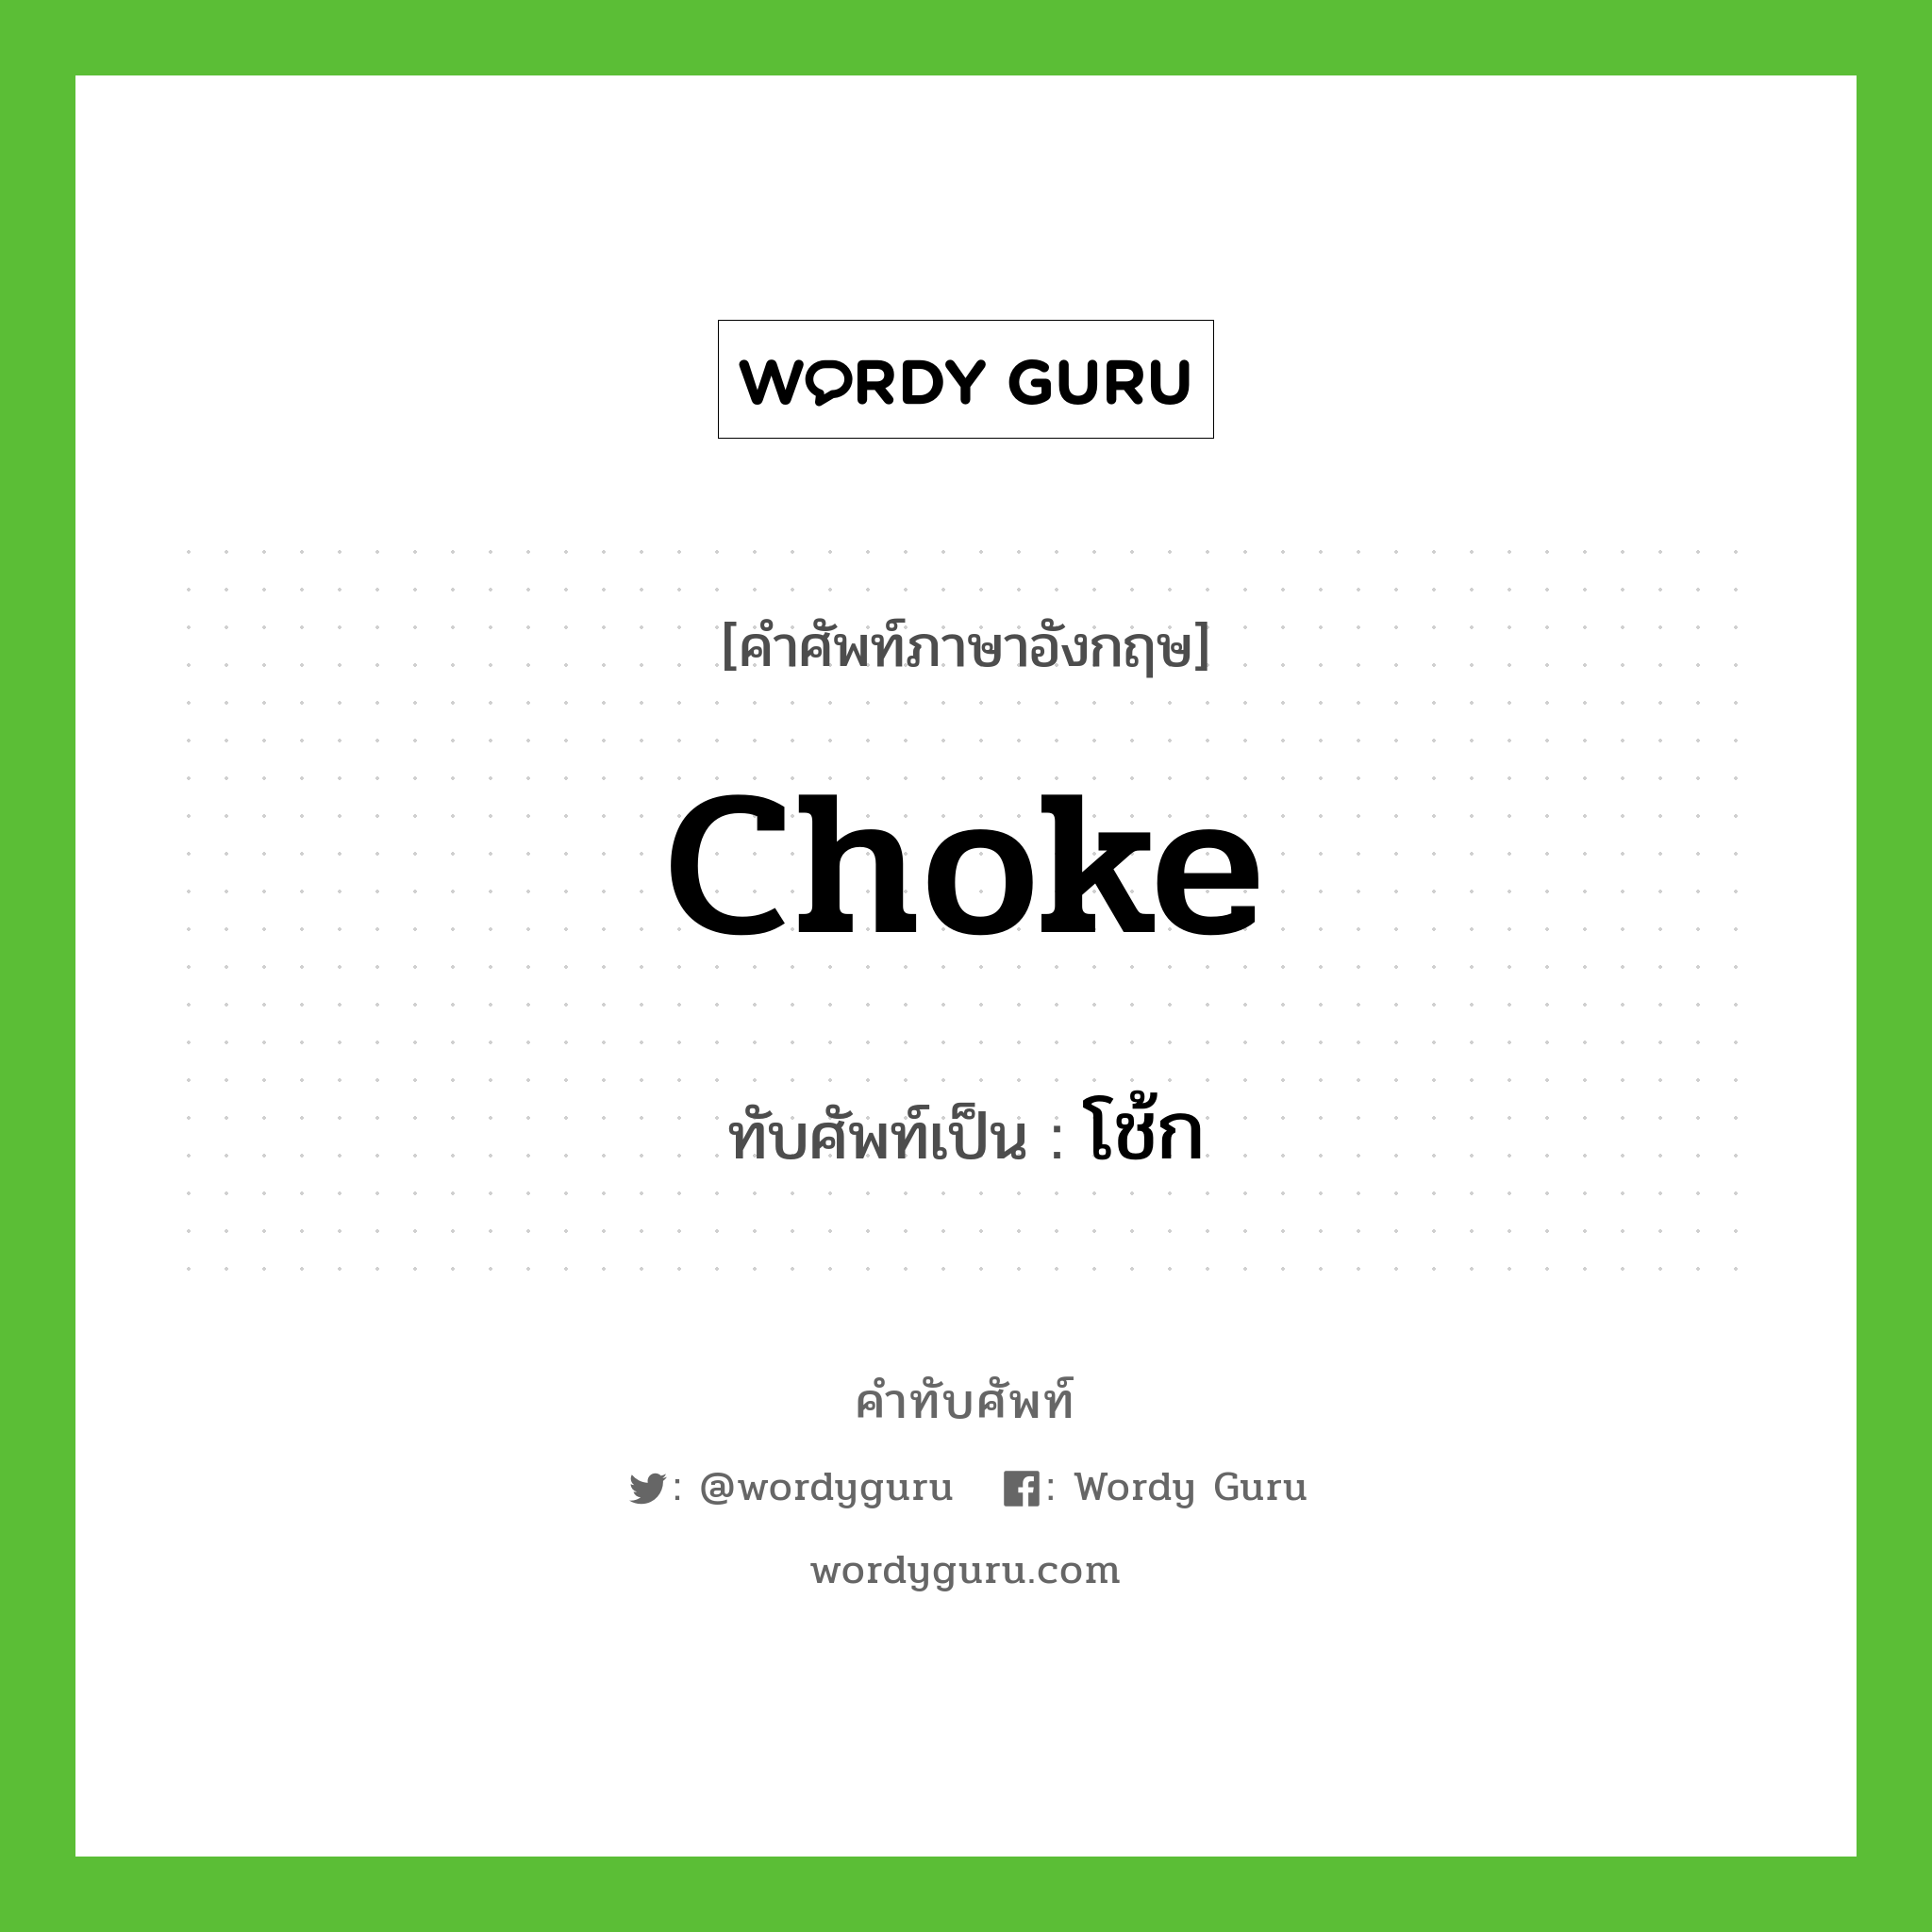 choke เขียนเป็นคำไทยว่าอะไร?, คำศัพท์ภาษาอังกฤษ choke ทับศัพท์เป็น โช้ก